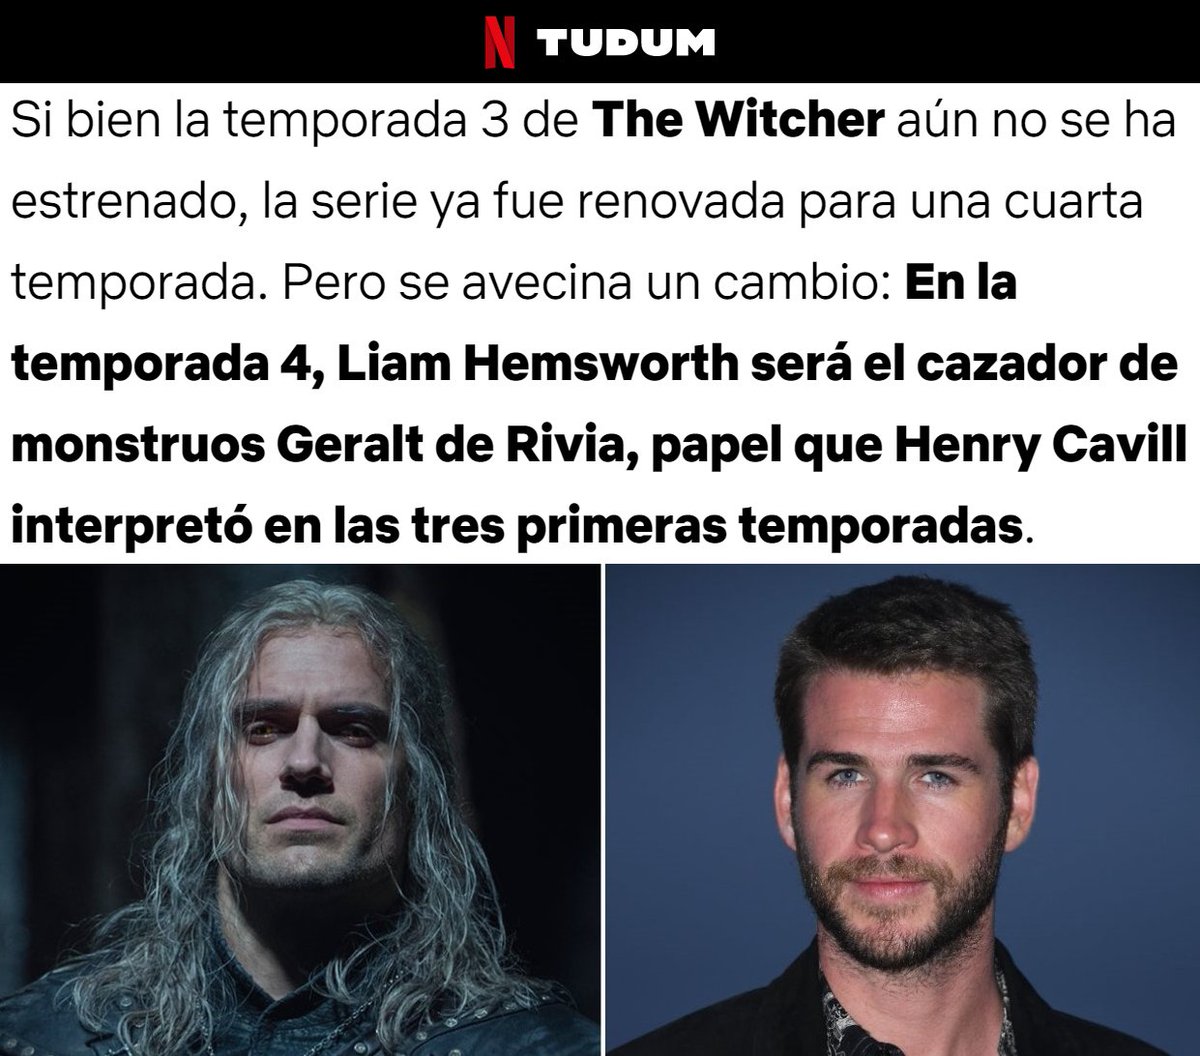 The Witcher': lo que sabemos de la temporada 4, que cambia a Henry